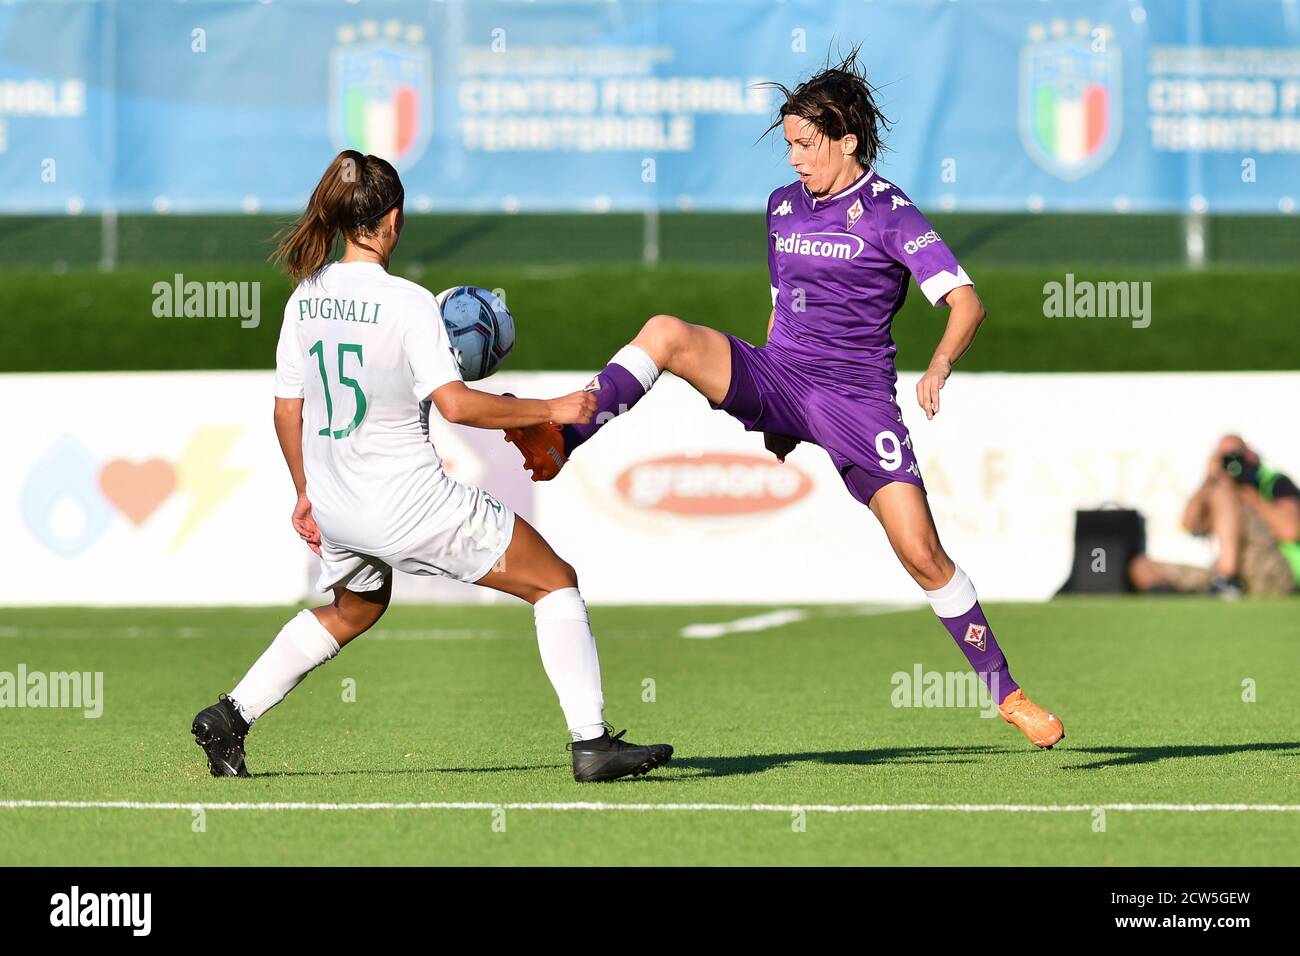 Daniela Sabatino (Fiorentina Femminile), Luisa Pugnali (Florentia S. Gimignano) durante ACF Fiorentina Femminile vs Florentia San Gimignano, così italiano Foto Stock